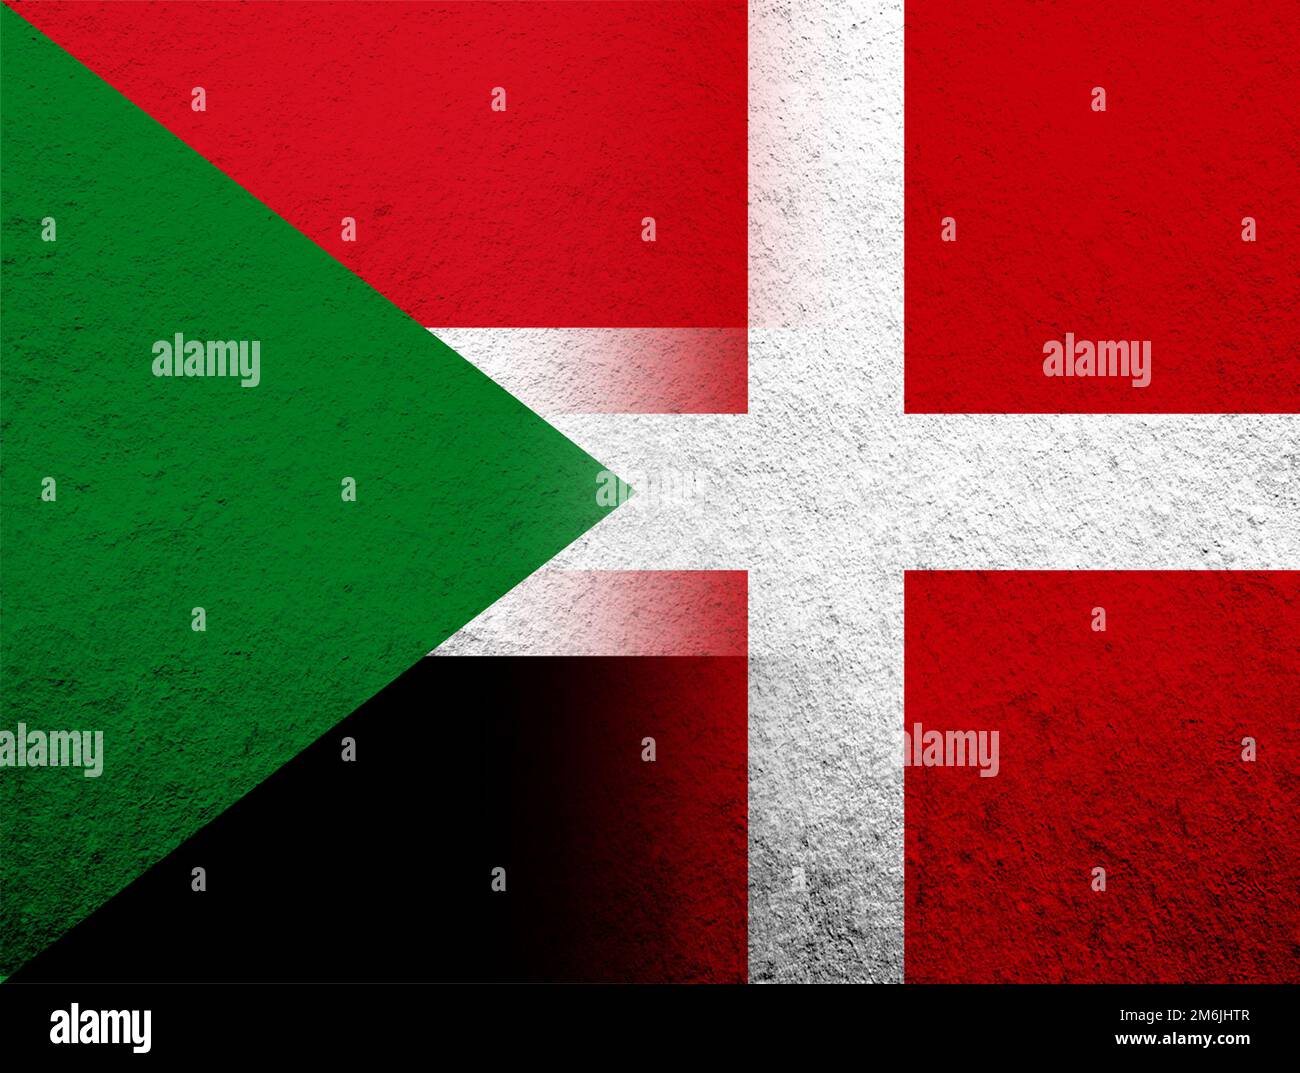 Le Royaume de Danemark drapeau national avec la République du Soudan drapeau national. Grunge l'arrière-plan Banque D'Images